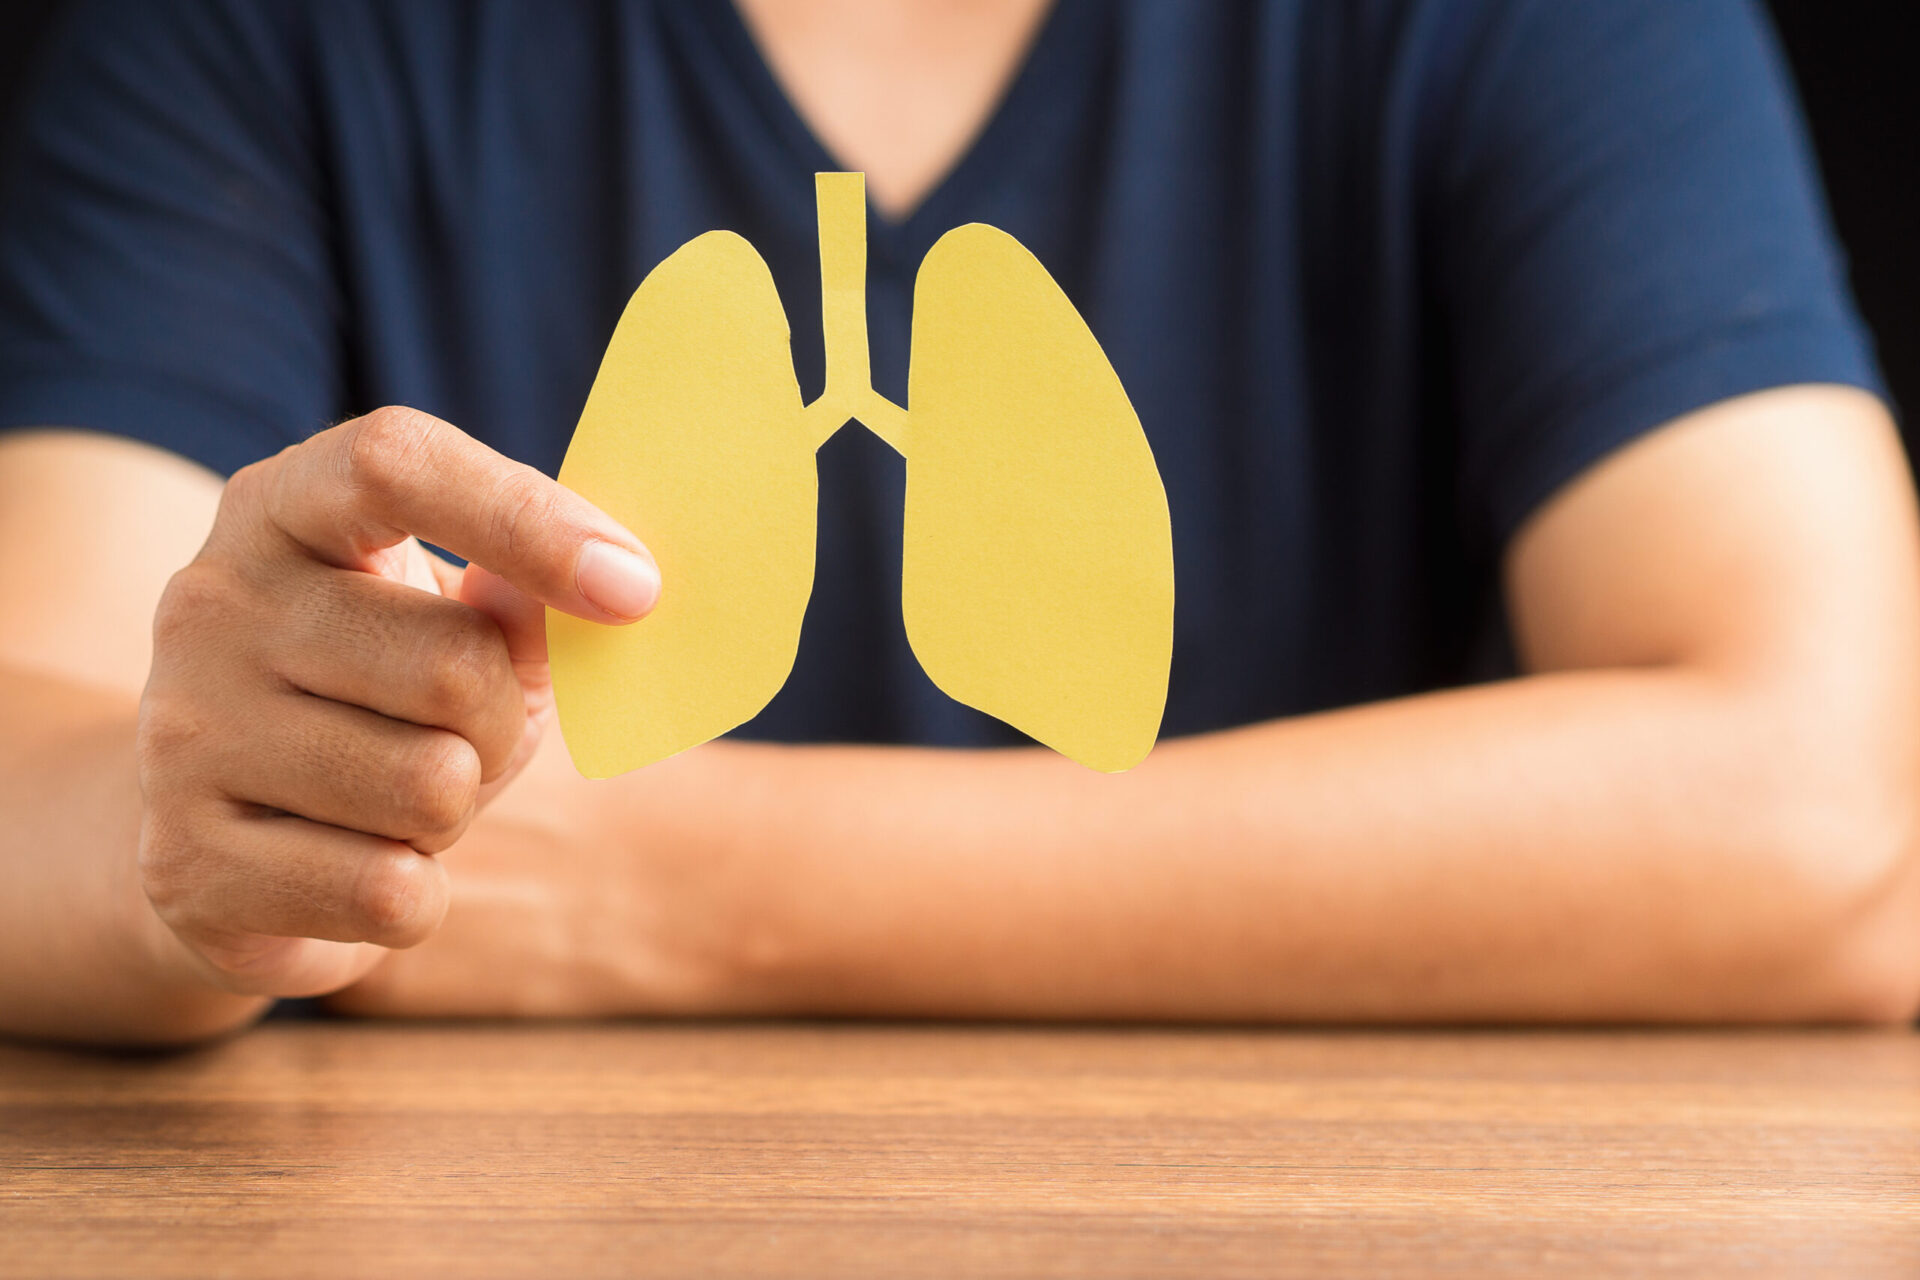 Zbliżenie dłoni mężczyzny trzymającego symbol płuc, siedzącego w szpitalu. Światowy Dzień Gruźlicy, Światowy Dzień Bez Tytoniu, rak płuc, nadciśnienie płucne, zapalenie płuc, COVID-19. Zdjęcie z bliska.